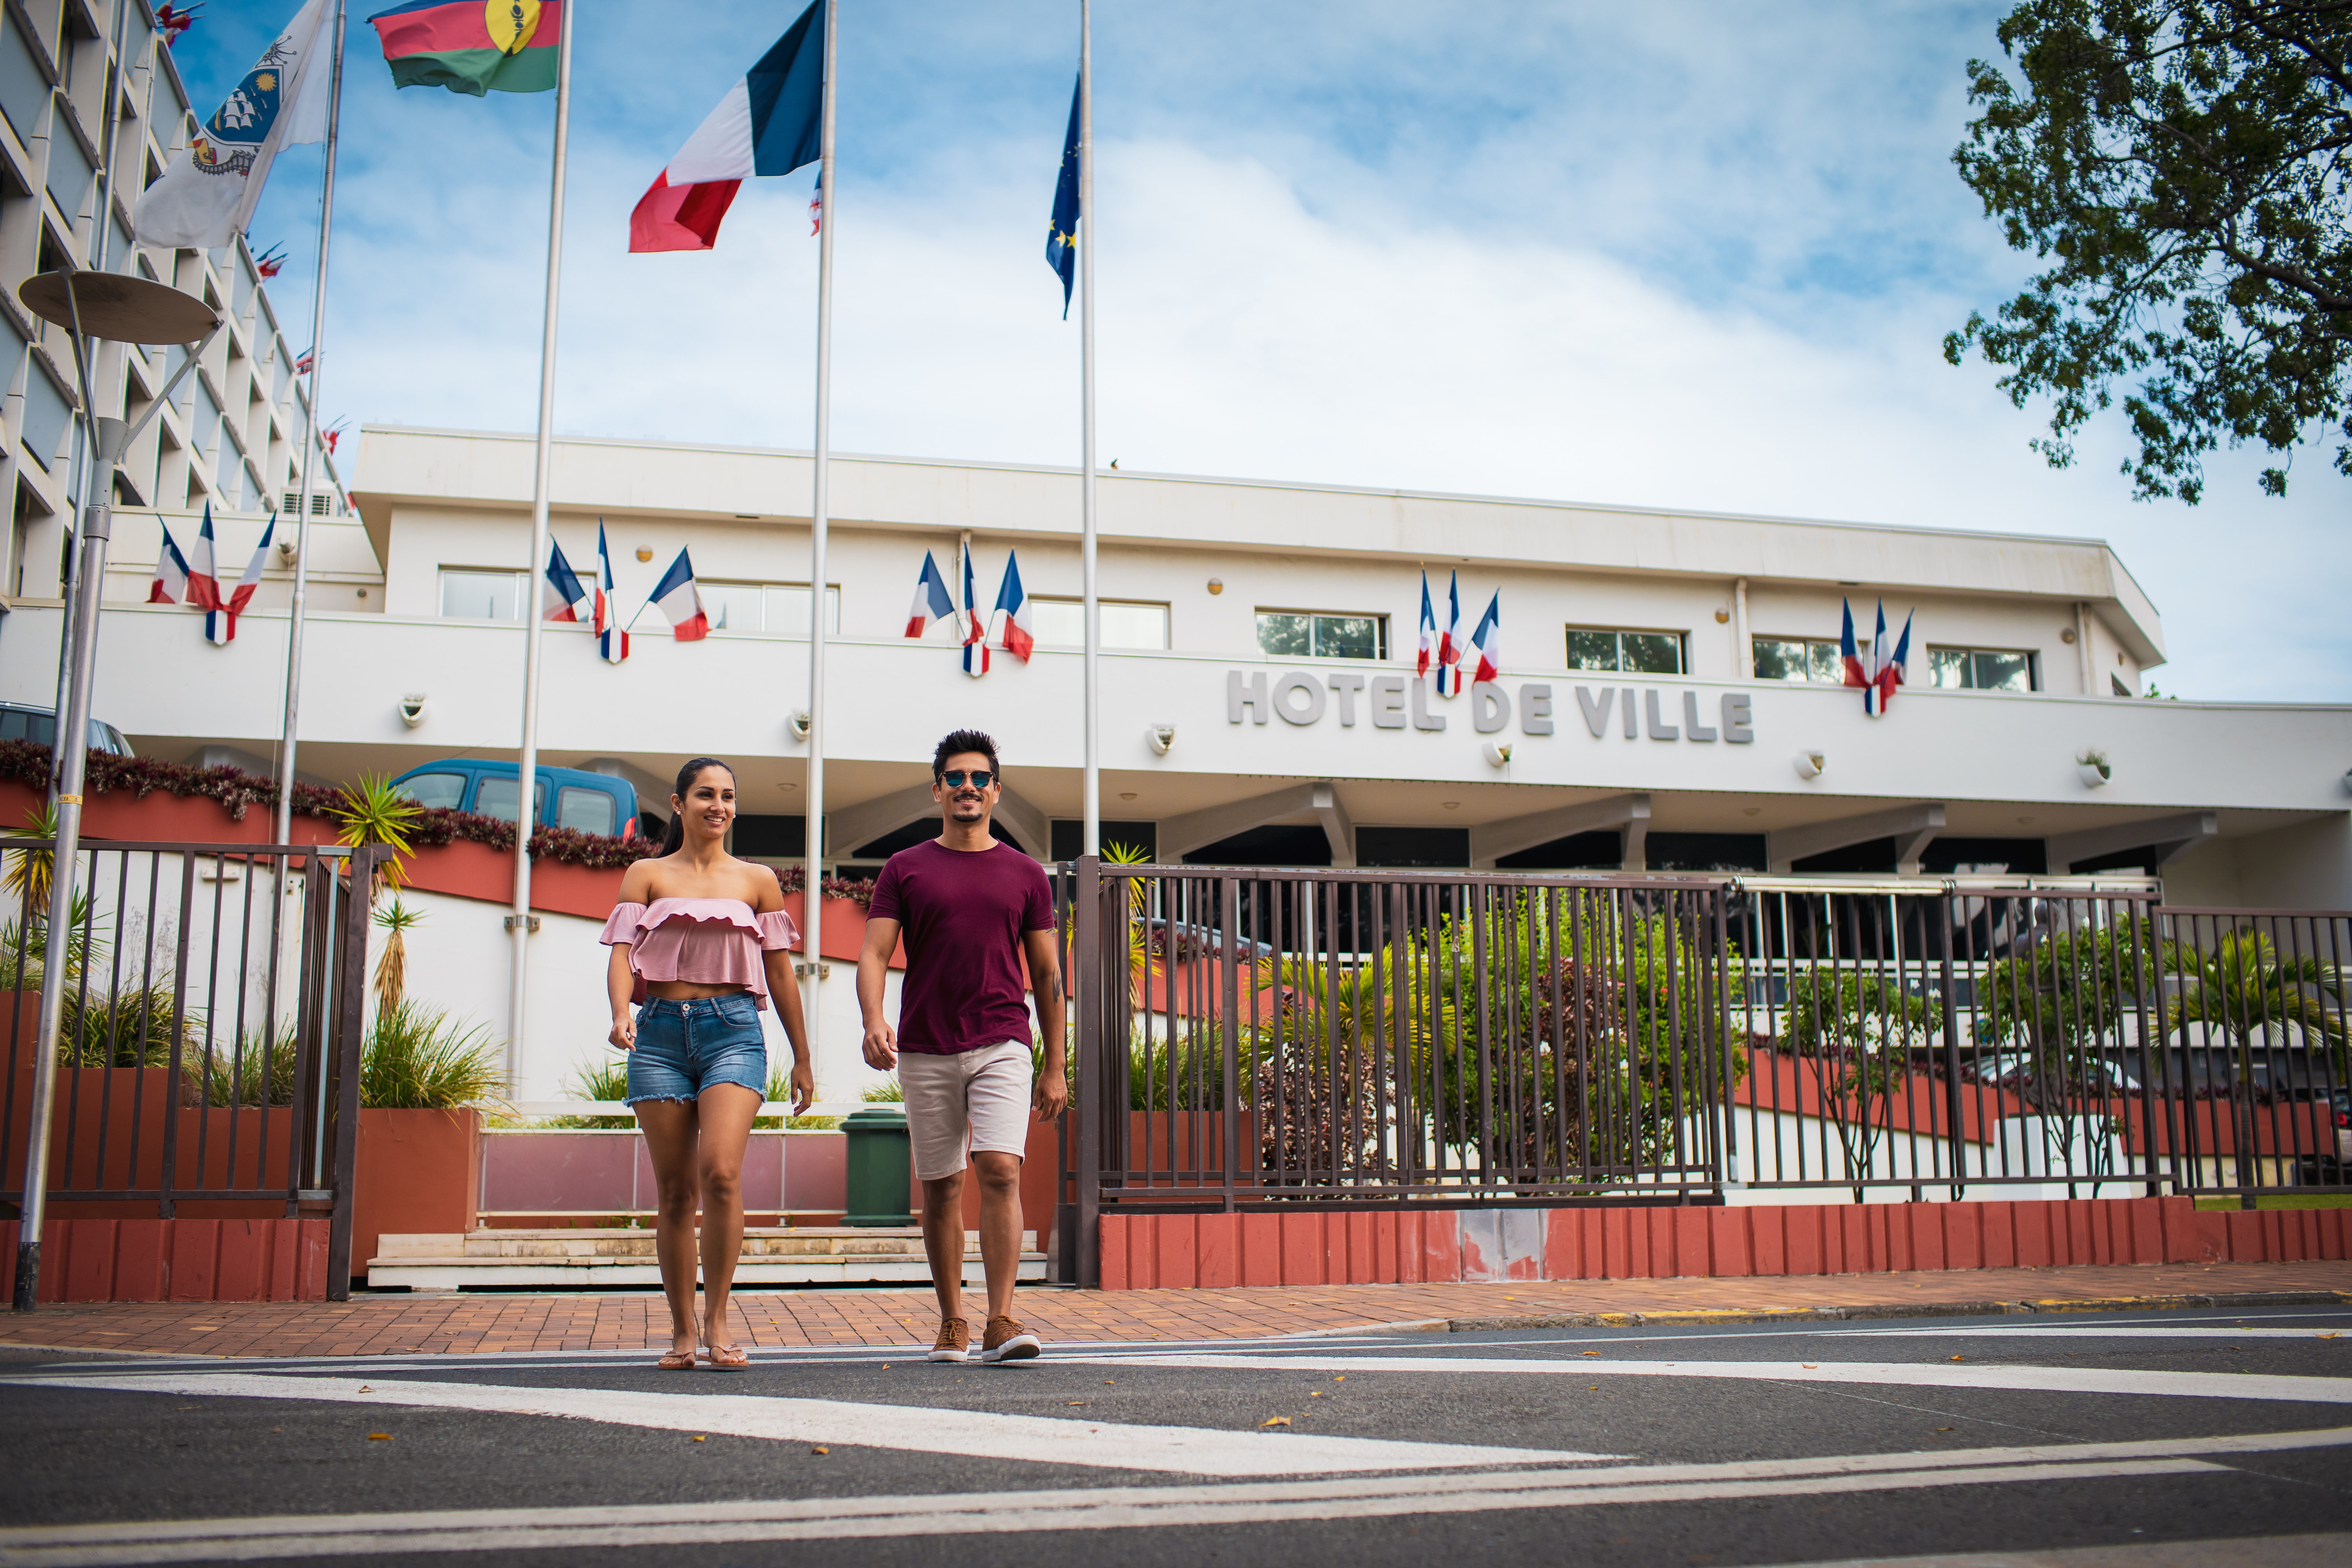 Saint-Raphaël: le maire offre des drapeaux français aux habitants